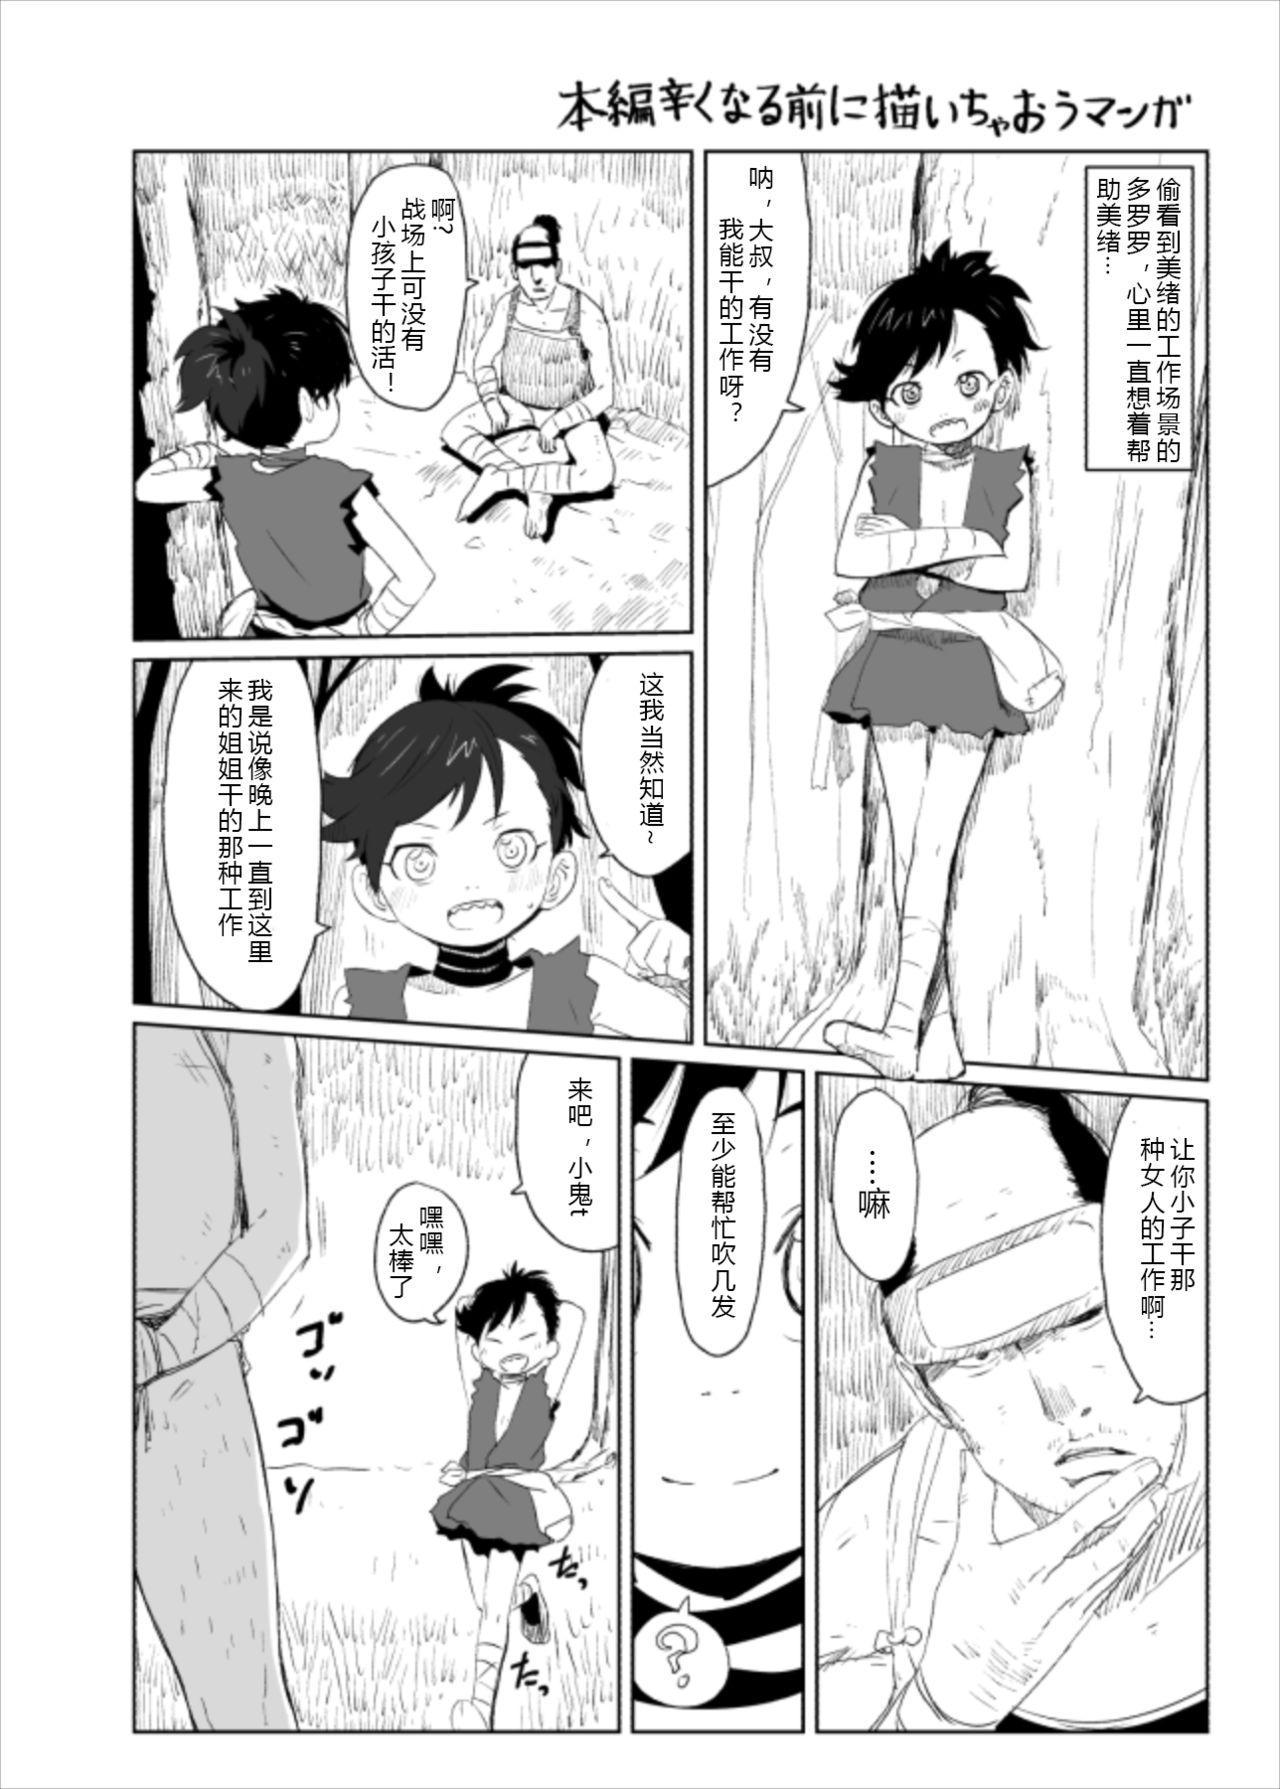 Dororo Rakugaki Echi Manga 2